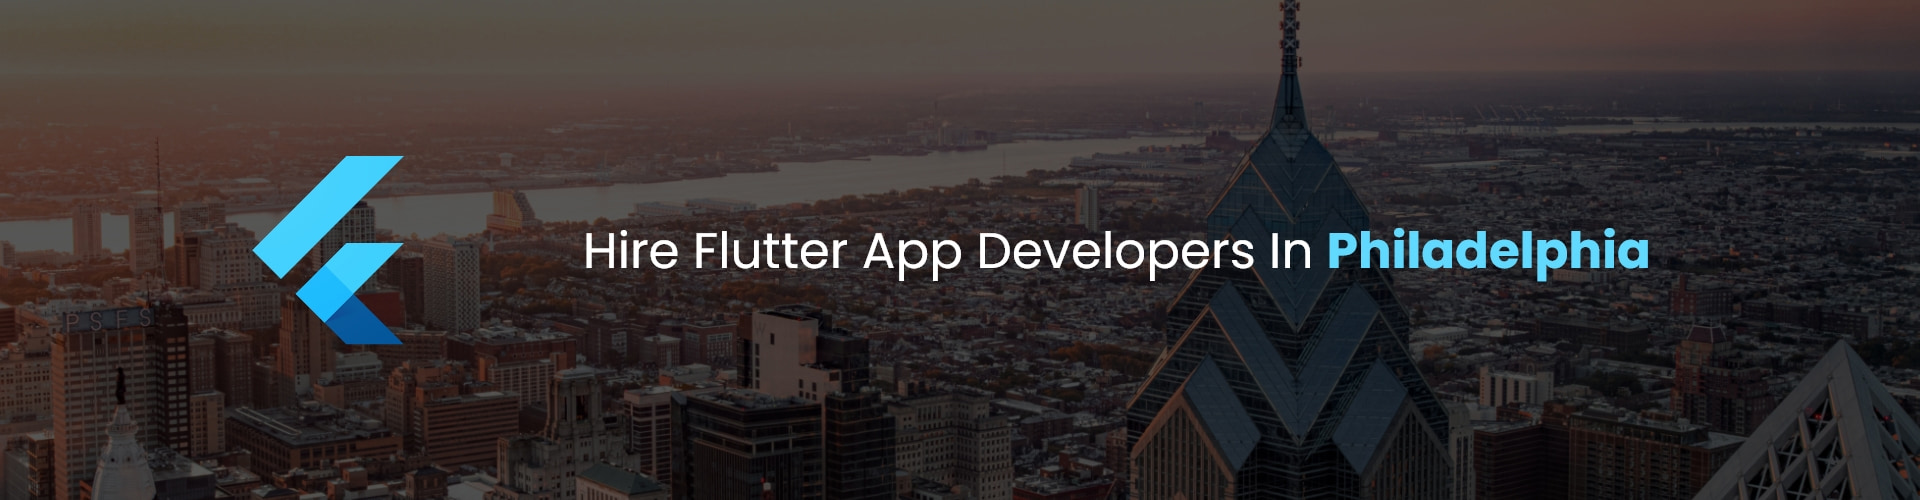 hire flutter app developers in philadelphia